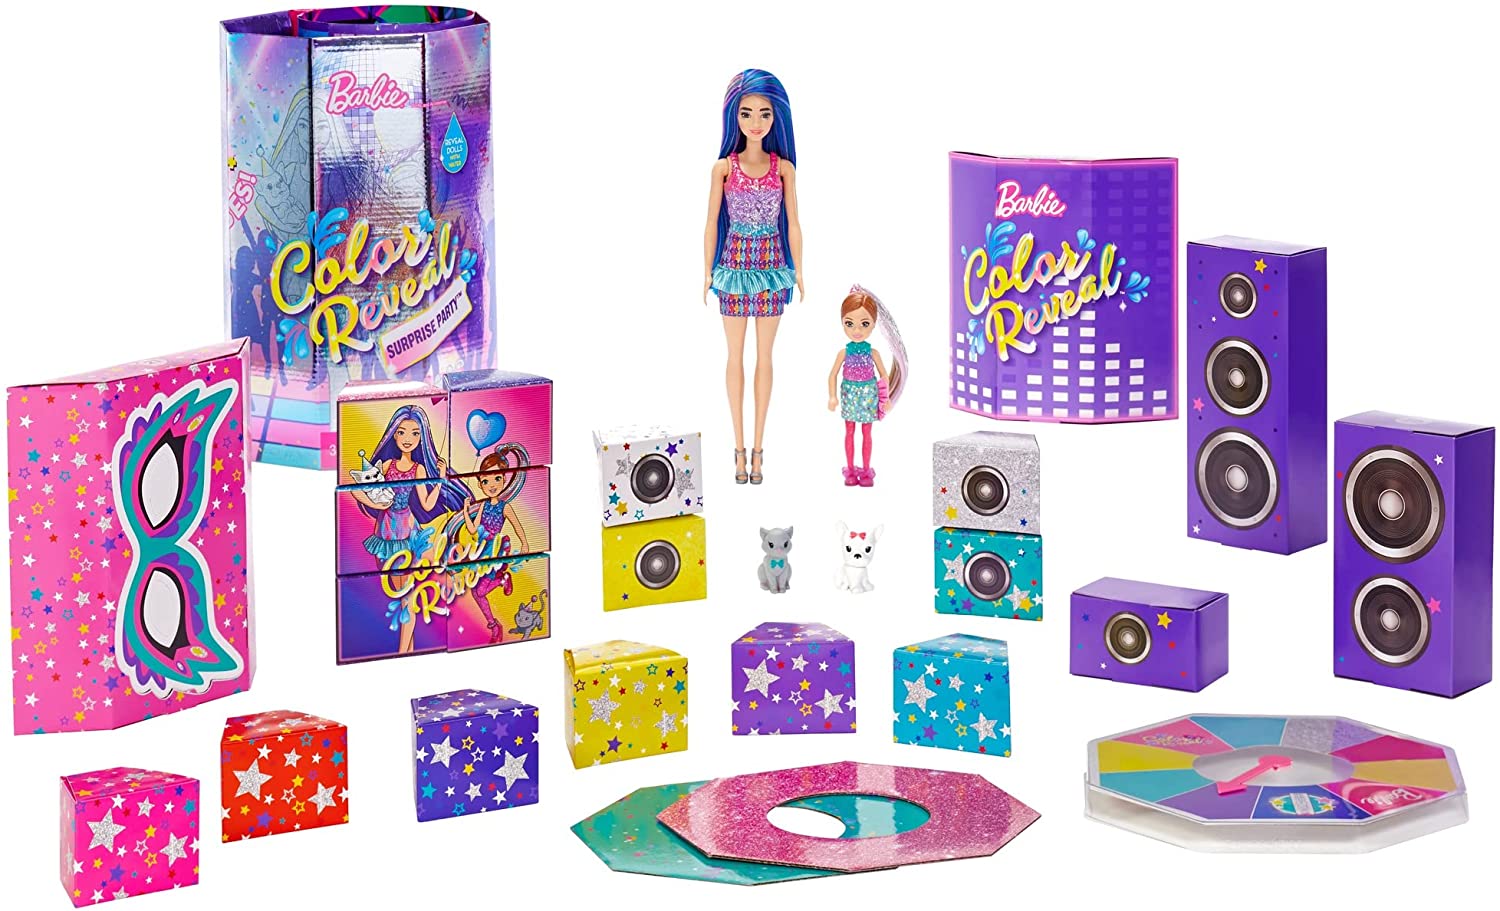 Barbie Color Reveal Surprise Party Set w/ 50+ Surprises $18.75 + FS w/ Amazon Prime or FS on $25+